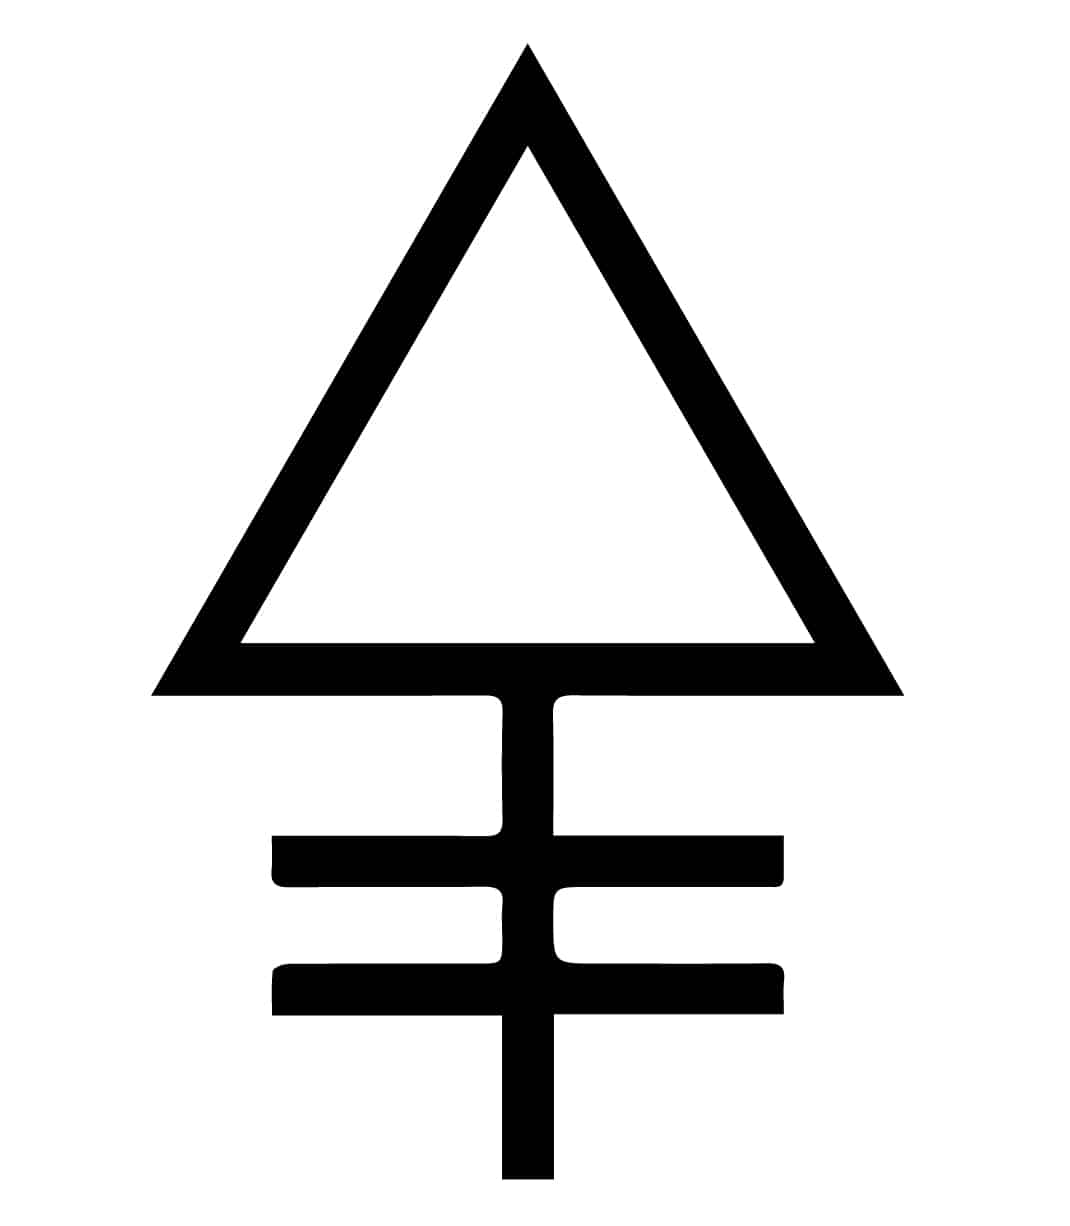 Simboli alchemici e loro significati - La lista estesa dei simboli alchemici